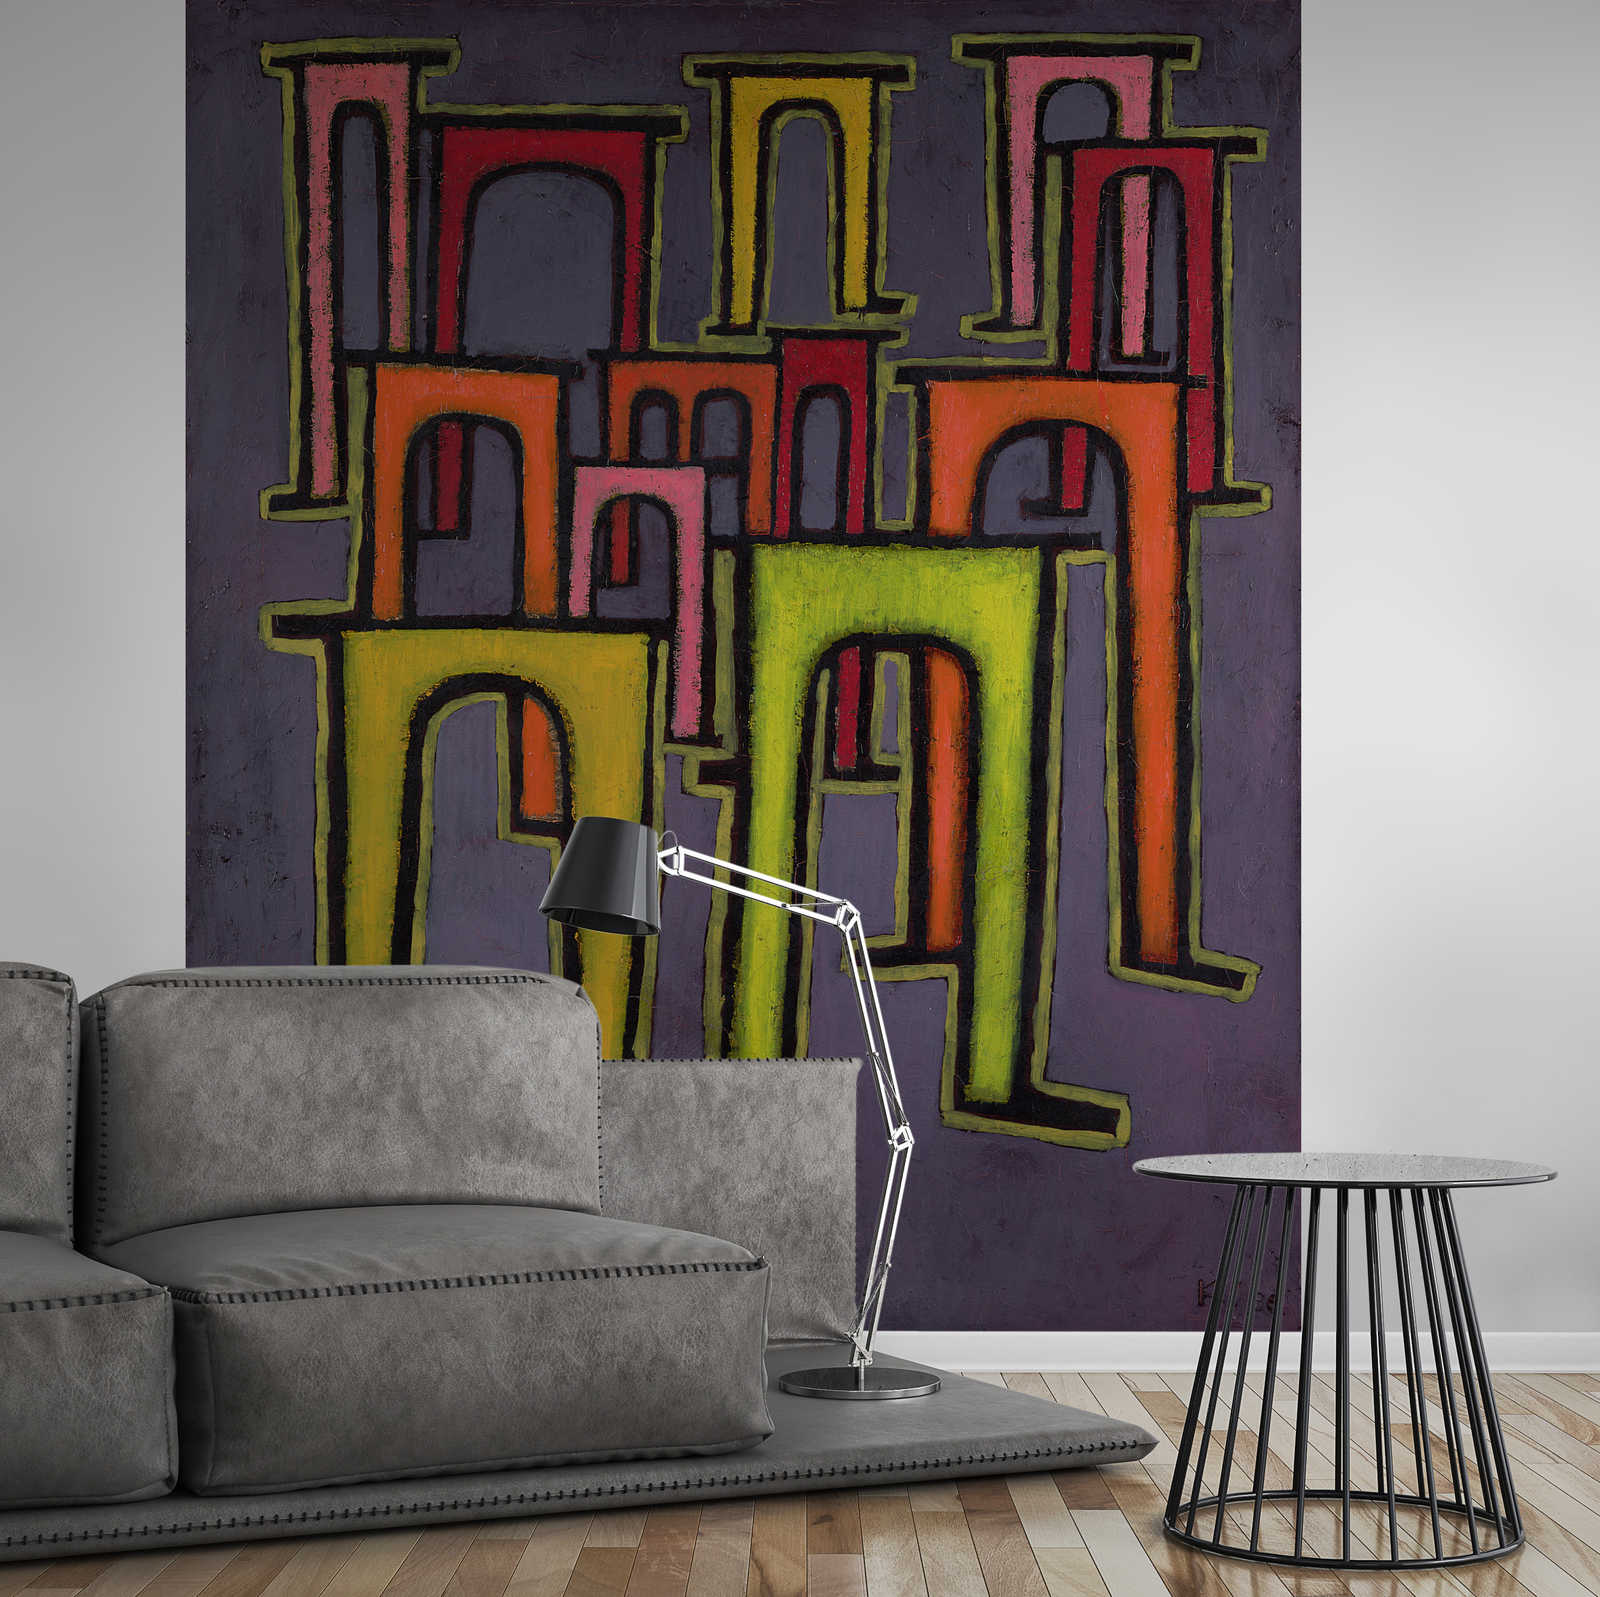             Papier peint panoramique "Révolution du viaduc" de Paul Klee
        